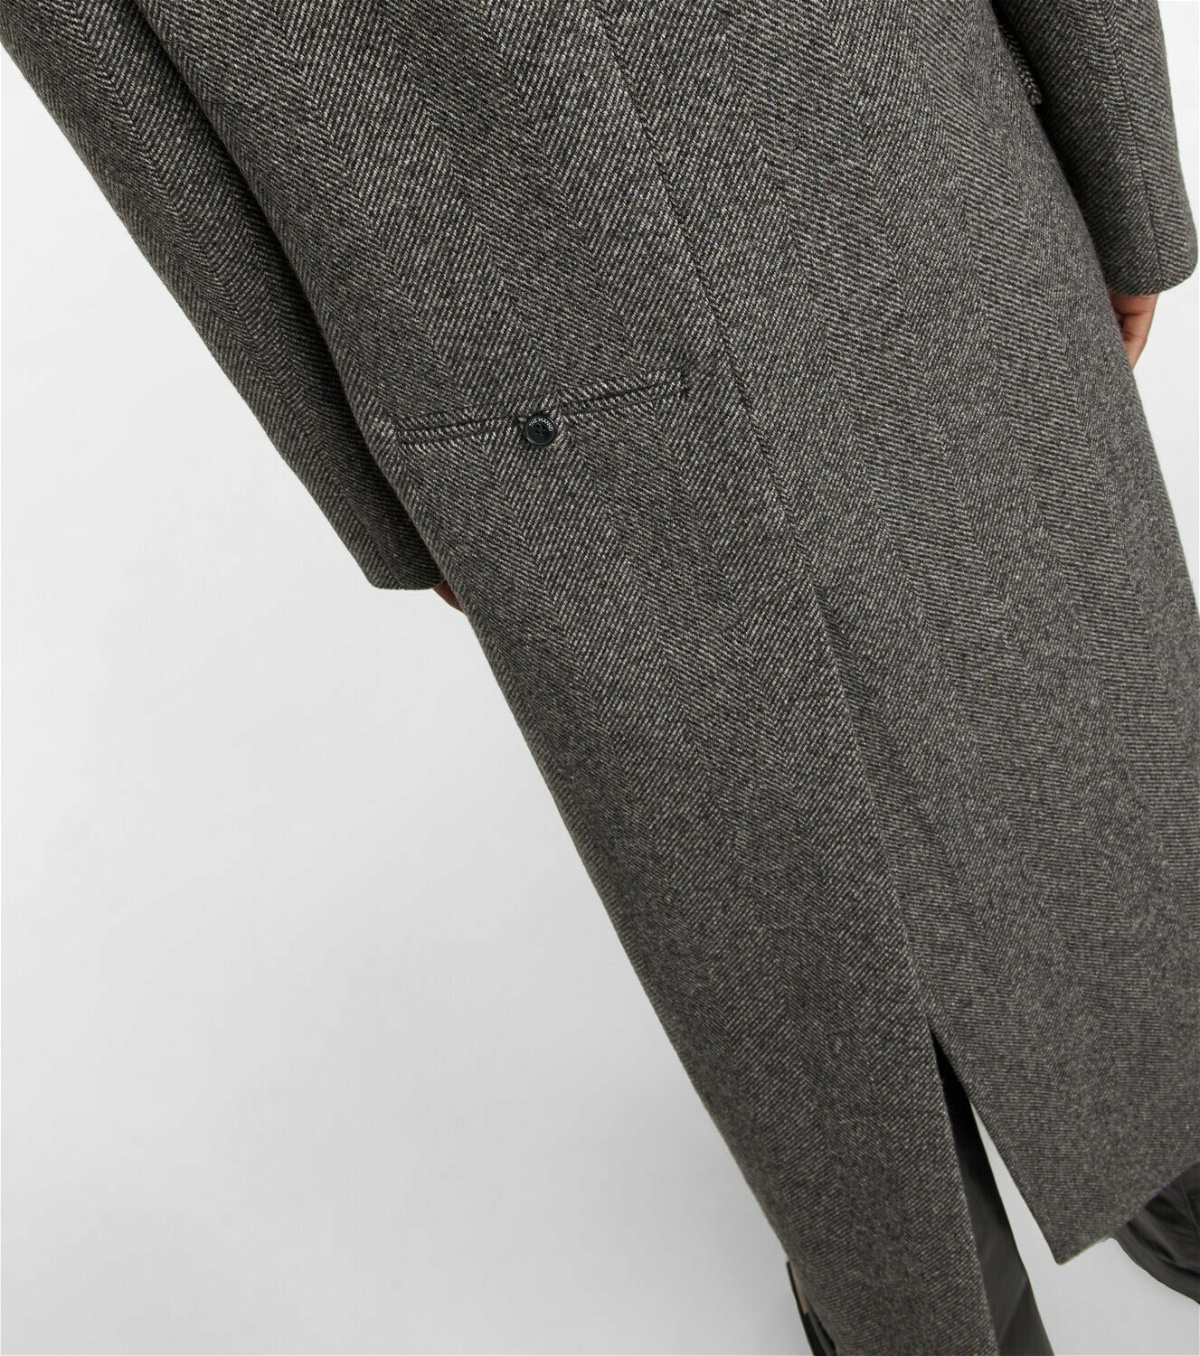 The Mannei Greenock herringbone wool-blend coat